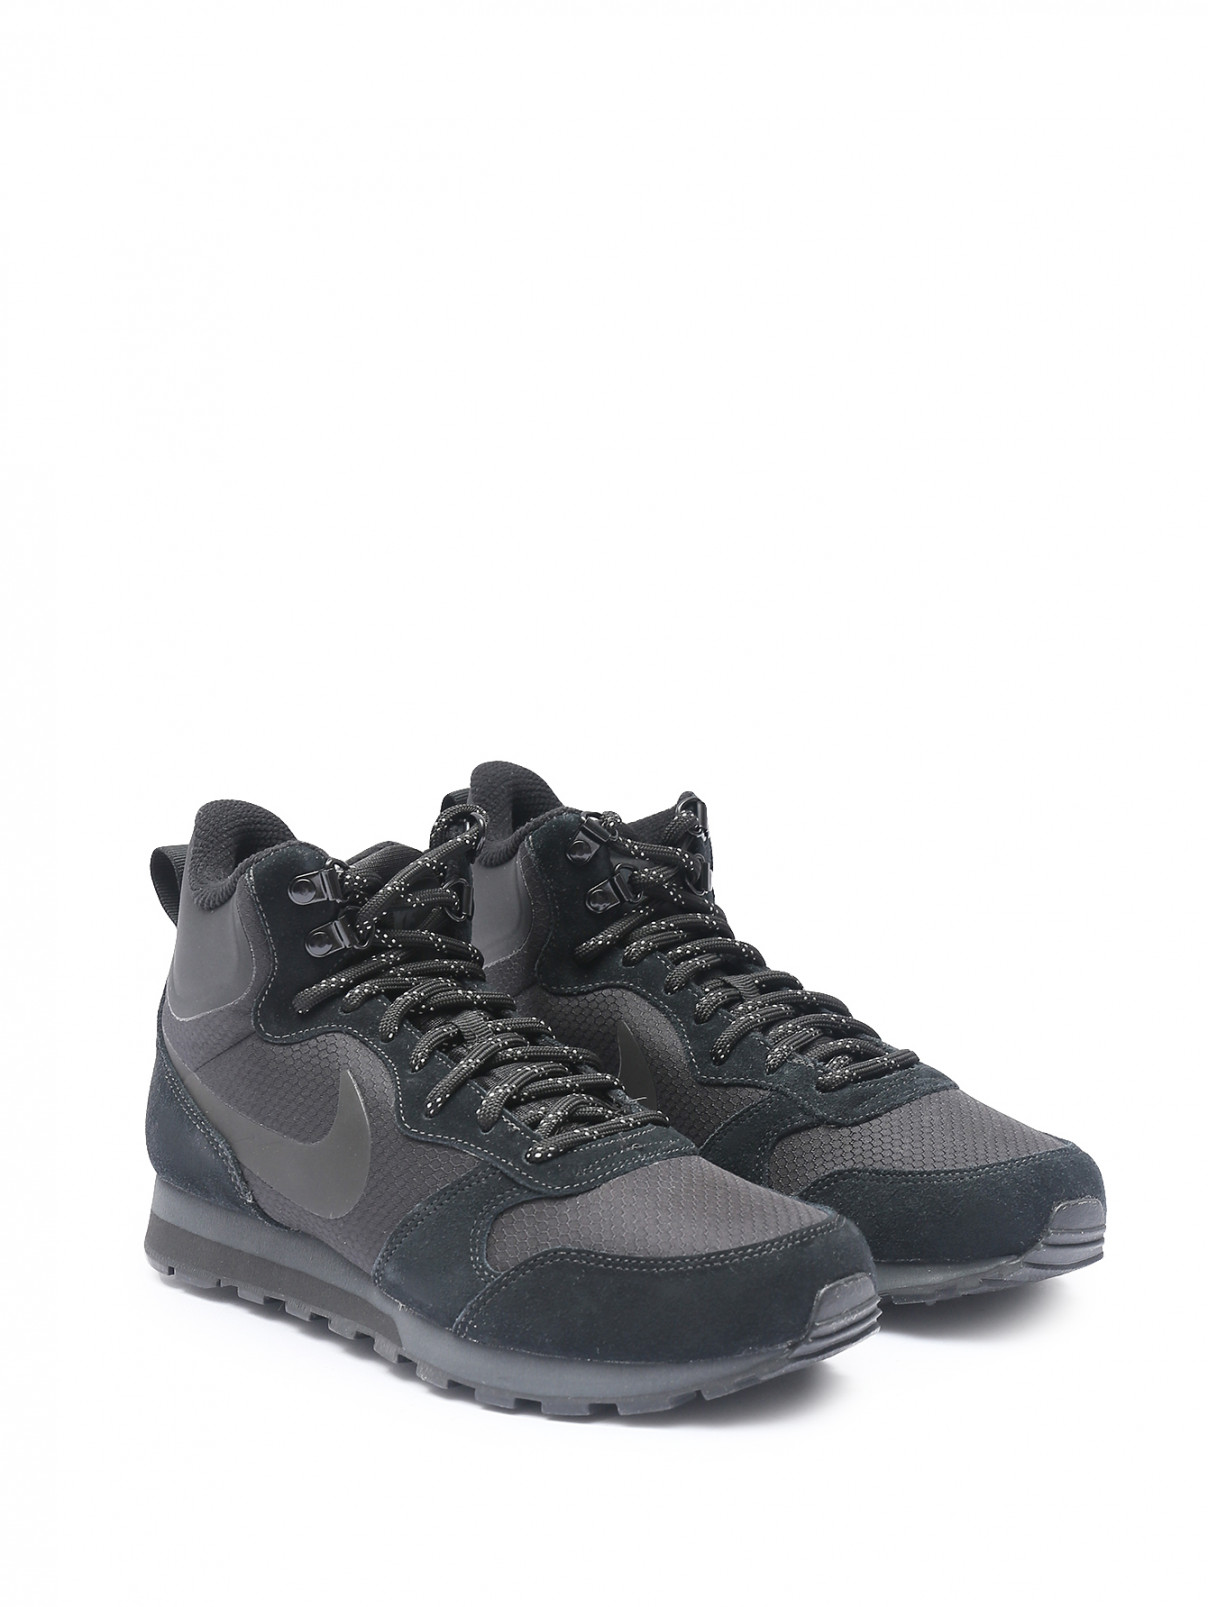 Комбинированные ботинки на шнурках Nike  –  Общий вид  – Цвет:  Черный